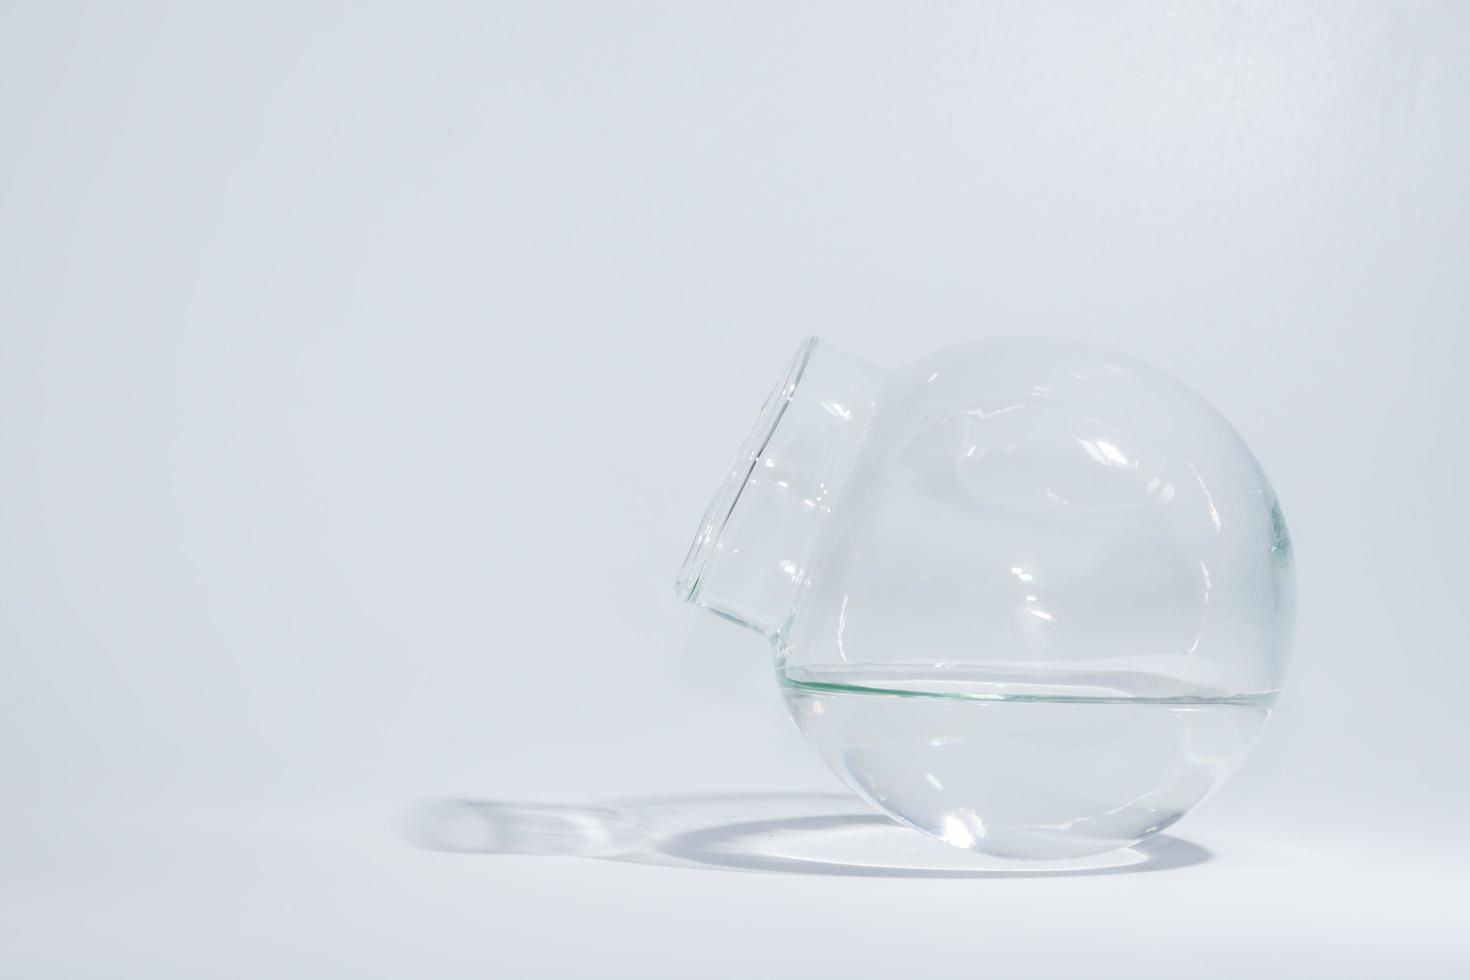 jarra globular cheia de água dentro foto